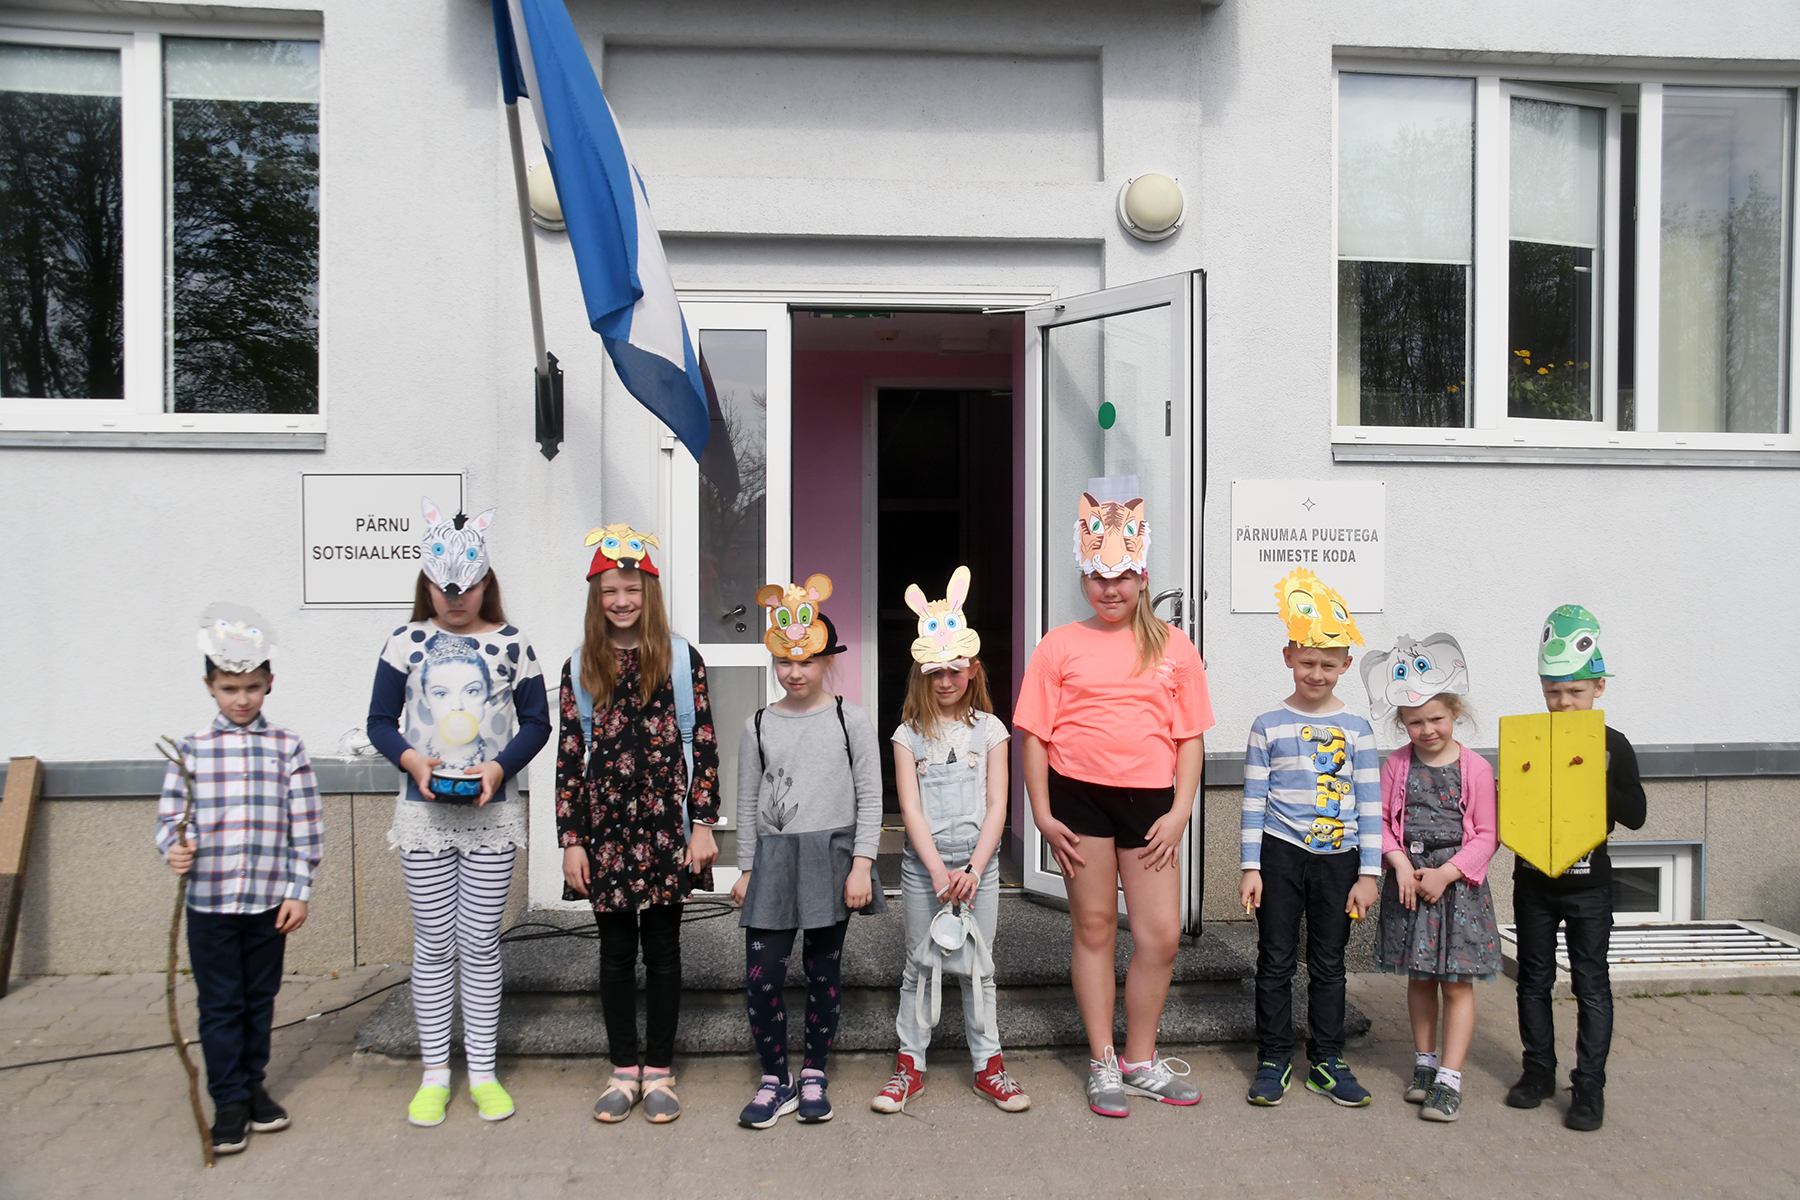 Eliisabeti koguduse pühapäevakooli näiterühma lapsed Pärnu sotsiaalkeskuse ees. Foto Urmas Saard